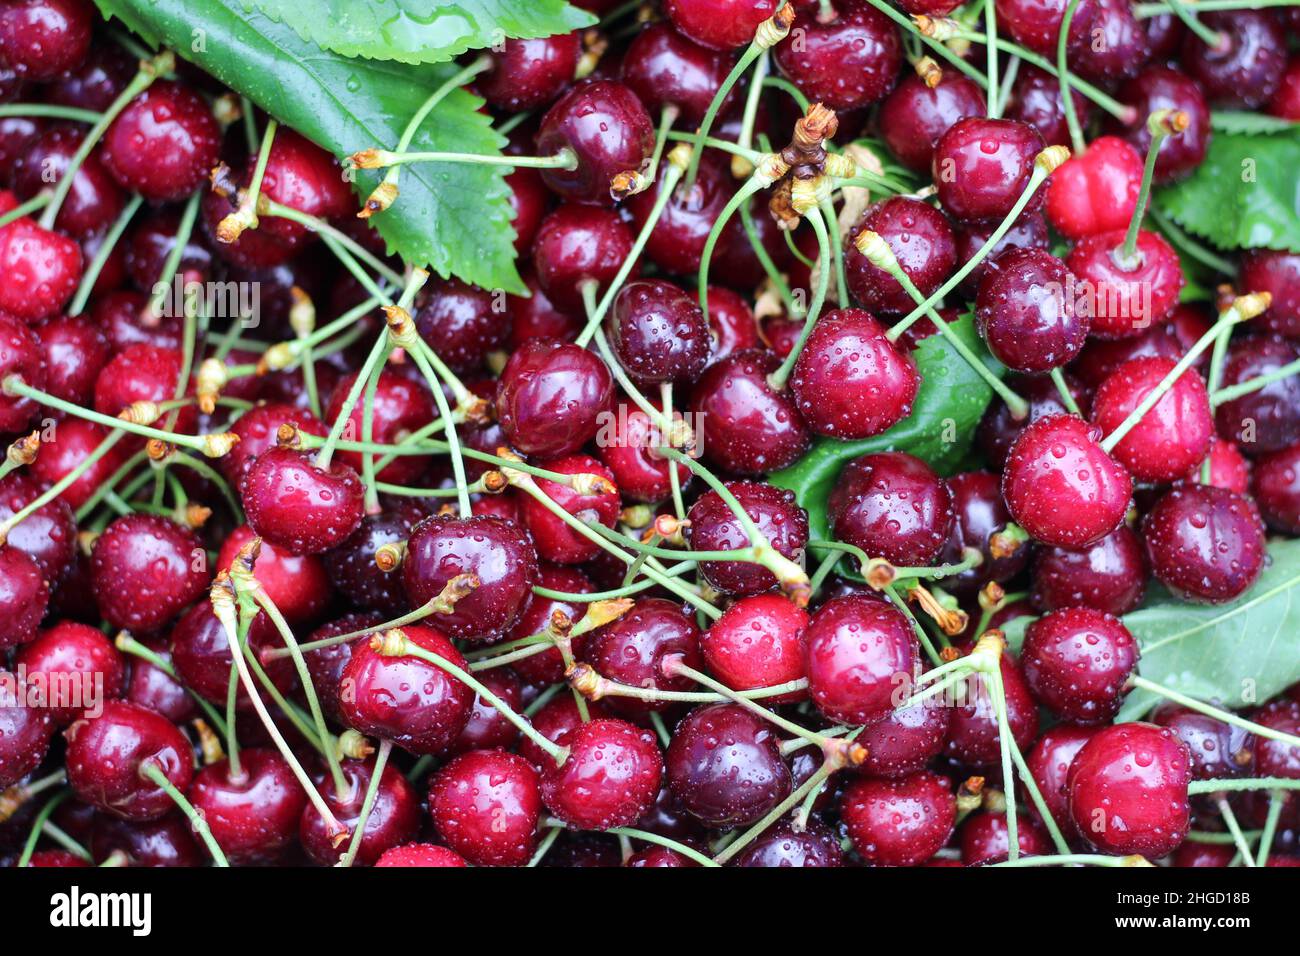 basket full of fresh cherries, harvesting cherries, dark red cherry background Stock Photo